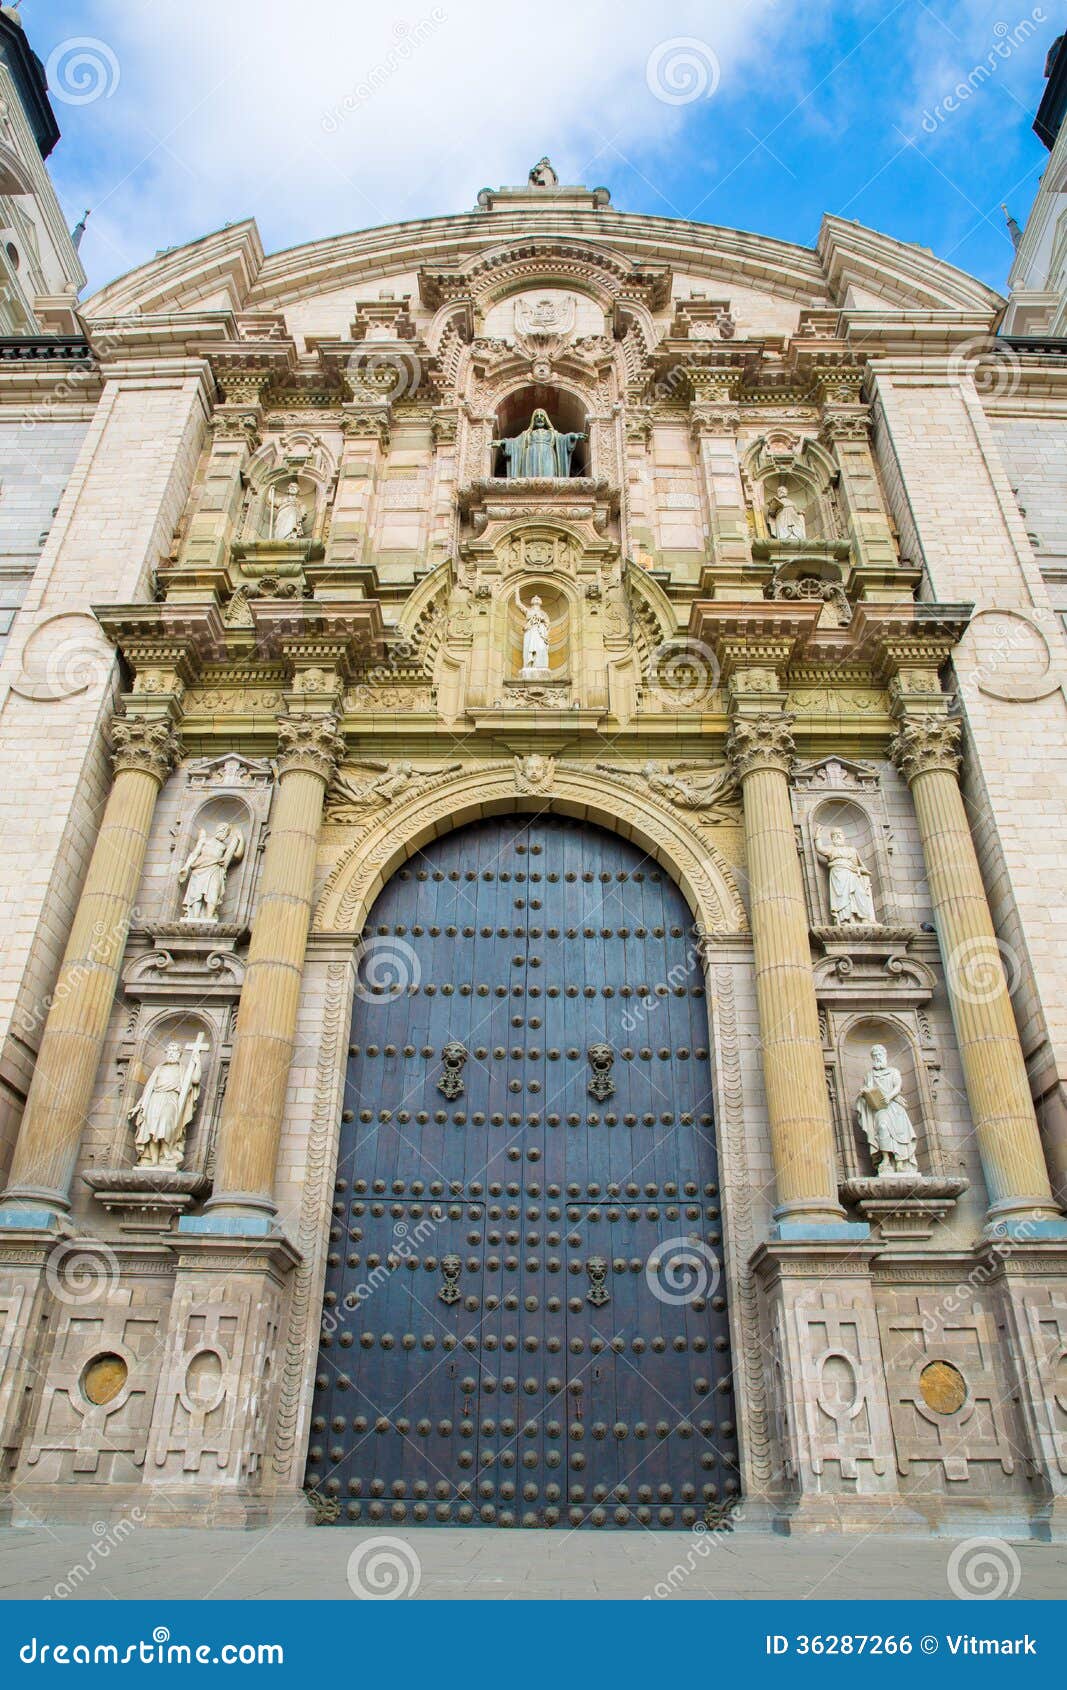 秘鲁 库斯科 库斯科大教堂-今日头条